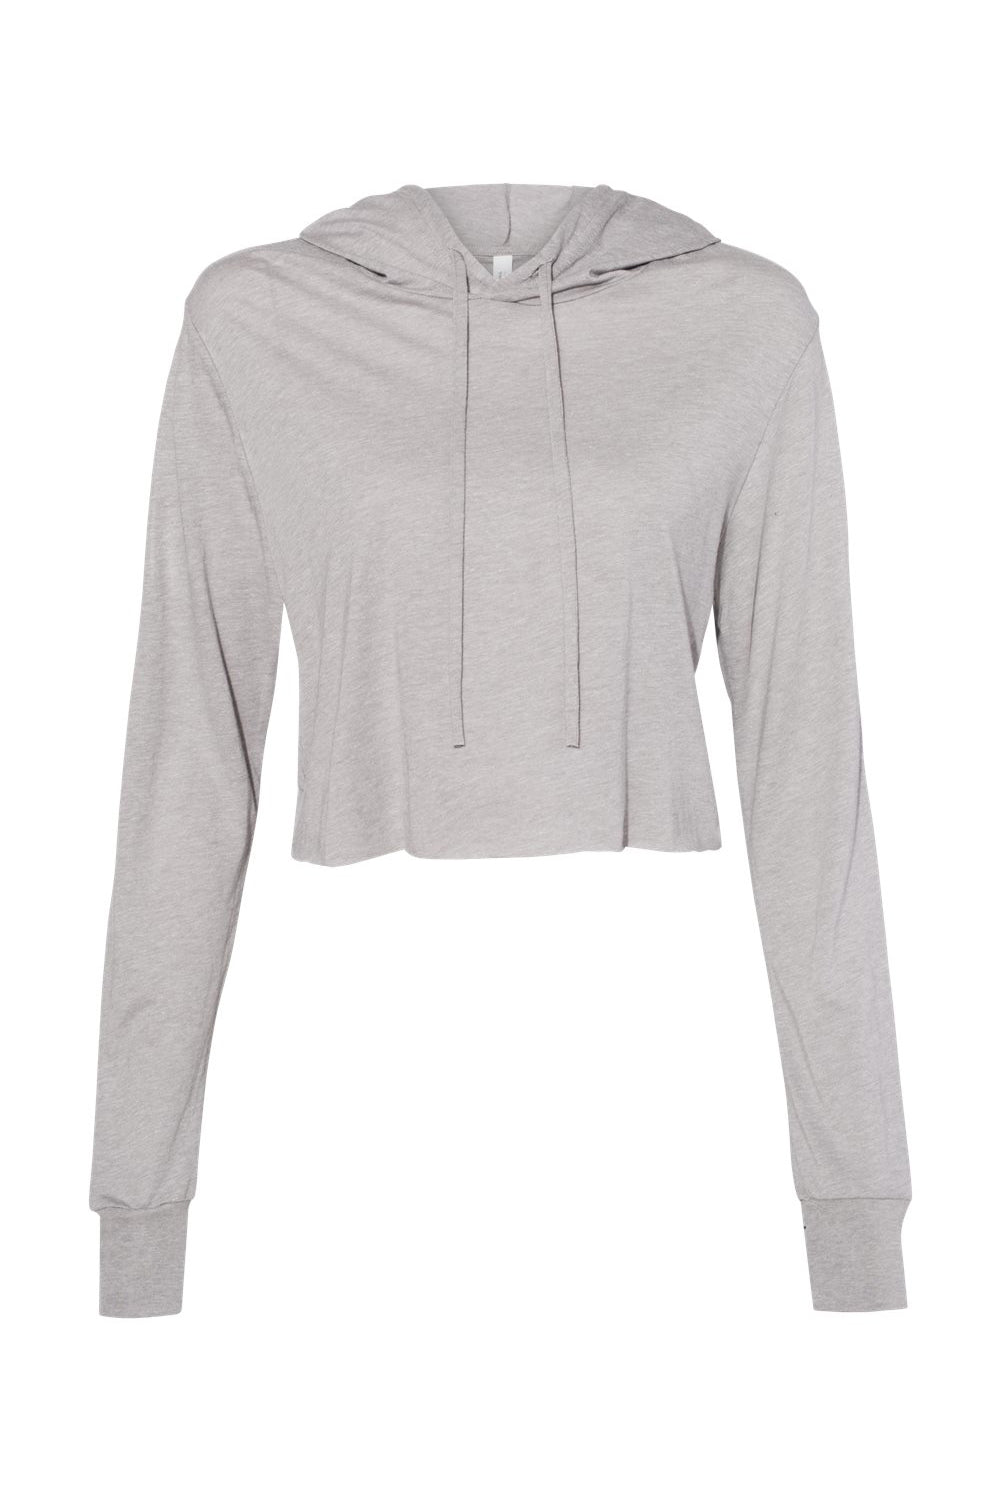 Bella + Canvas 8512 Womens Crop Long Sleeve Hooded Sweatshirt Hoodie Athletic Grey Flat Front